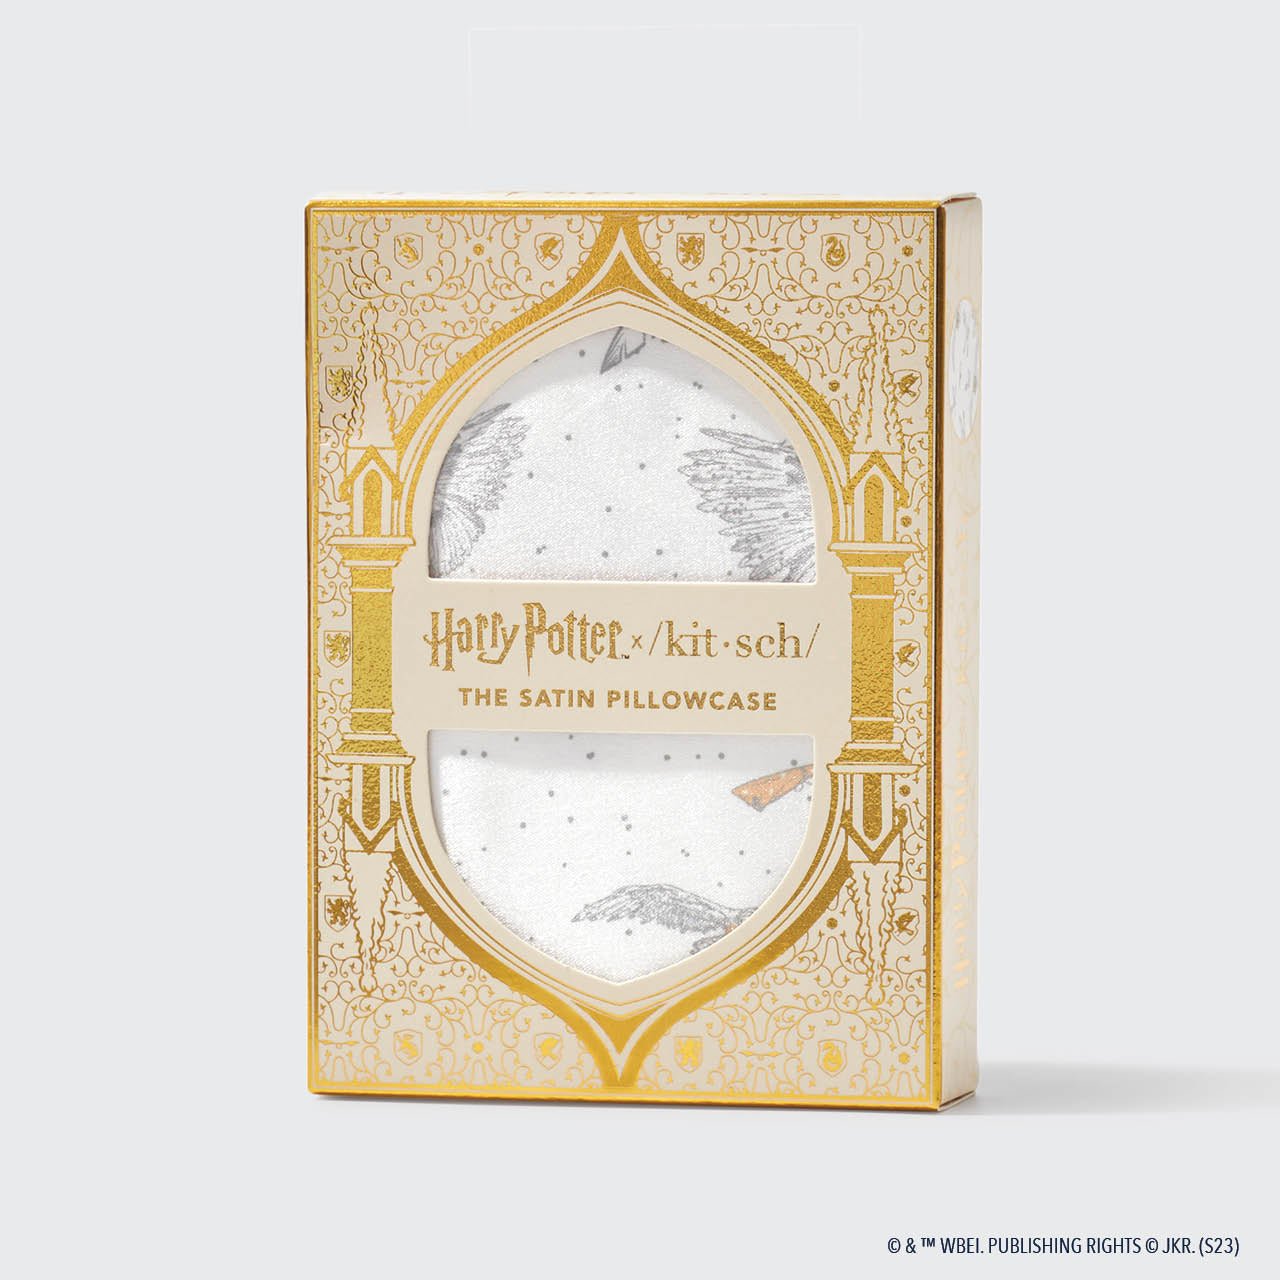 Harry Potter x Kitsch verzamelbundel